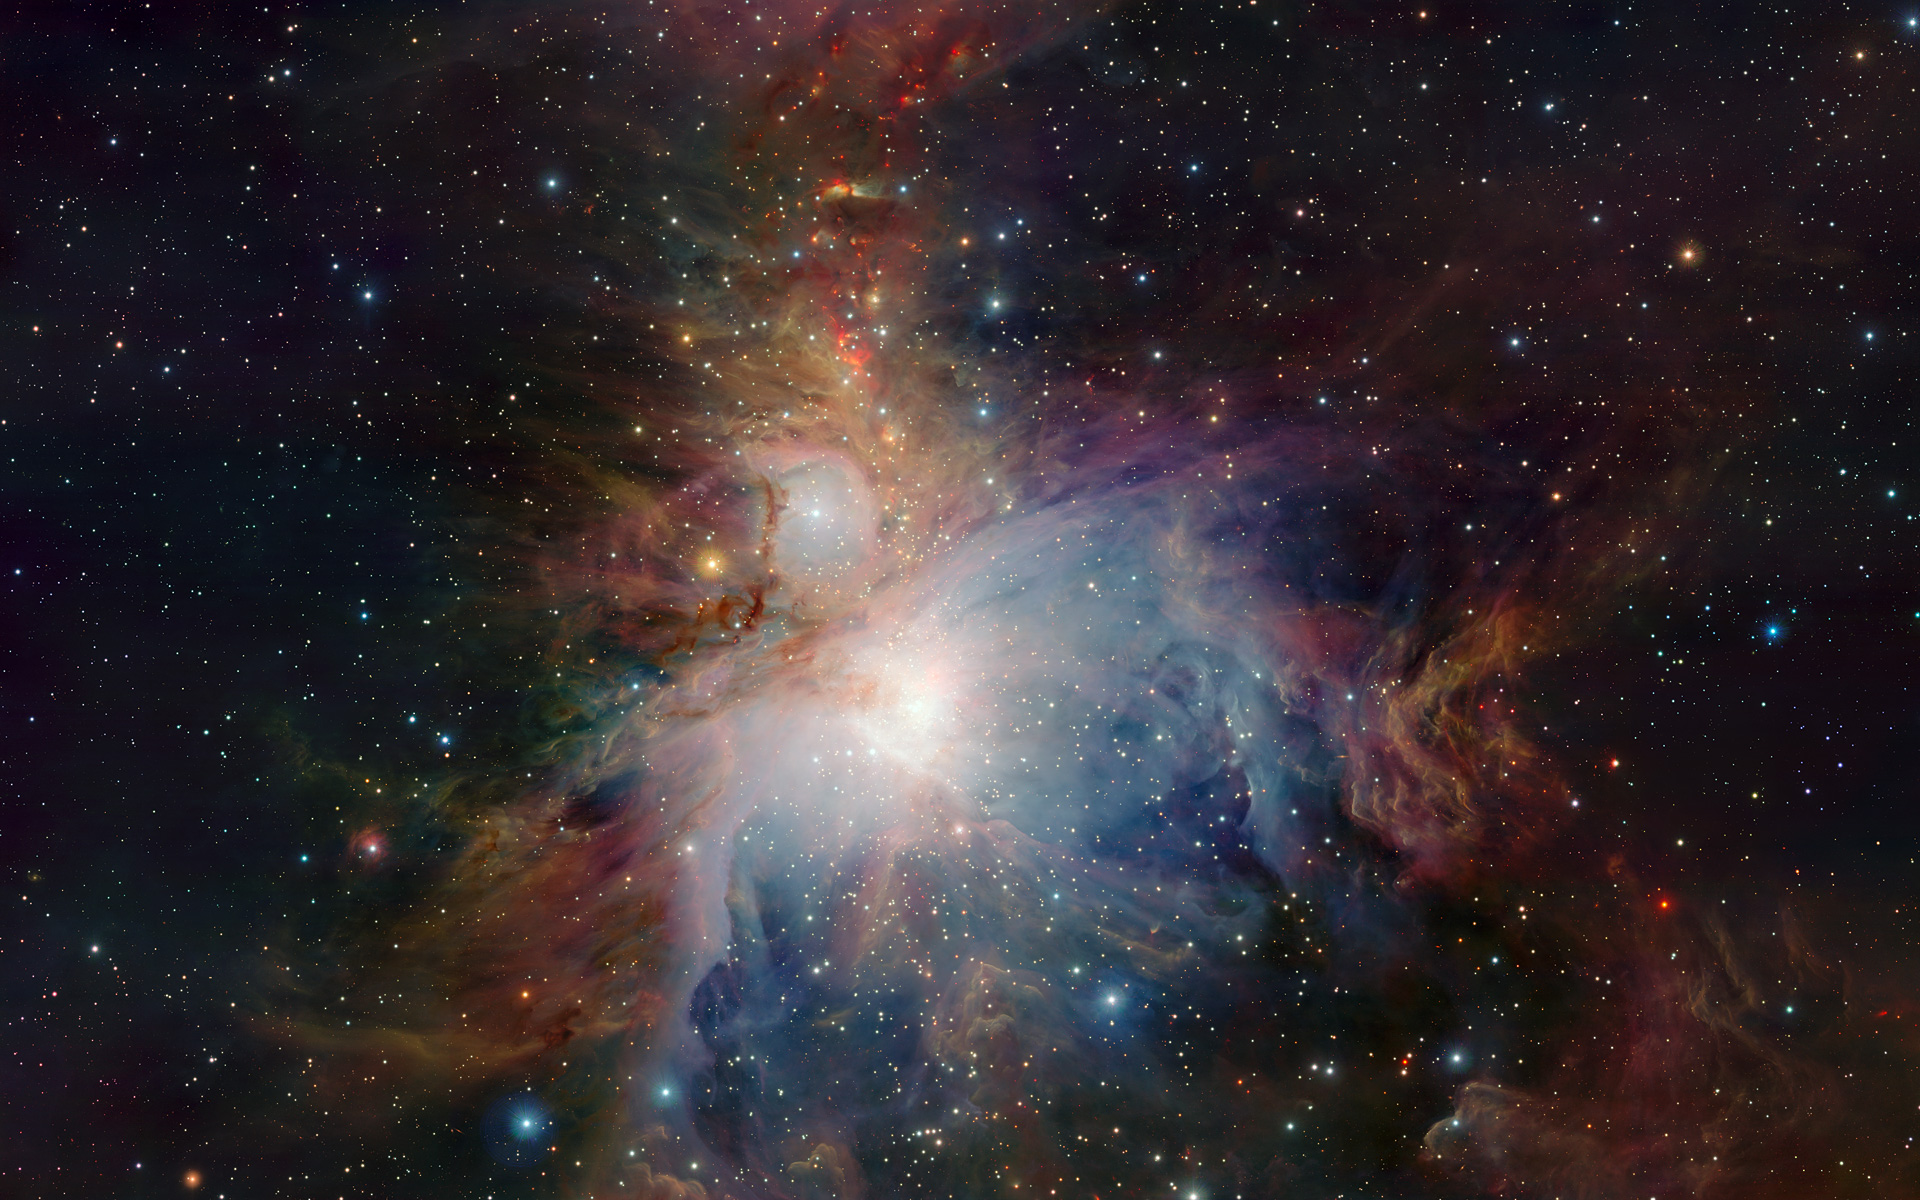 Orion_Nebula_(Messier_42).jpg